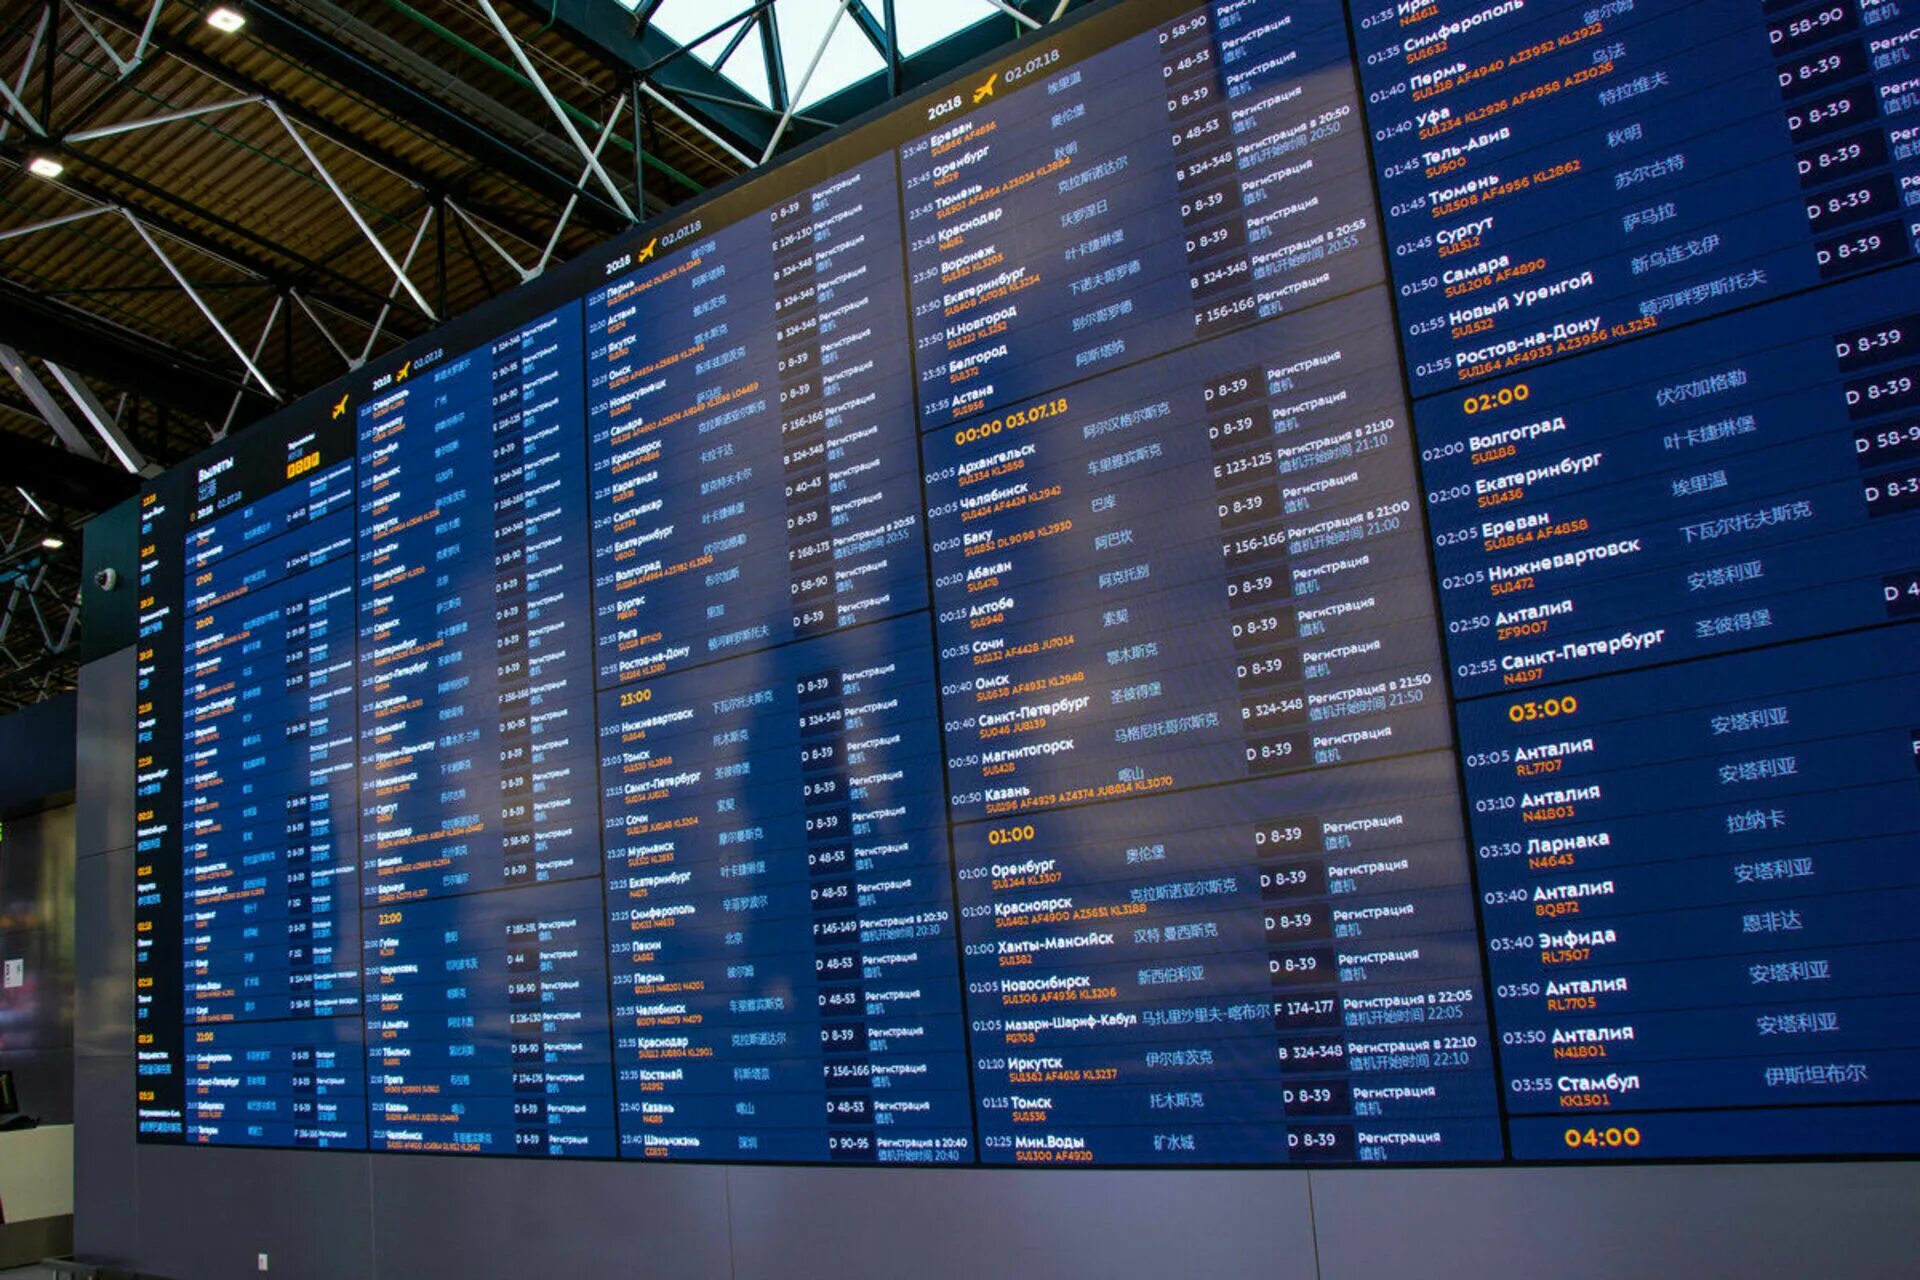 Табло вылета аэропорта вены. Аэропорт Шереметьево табло. Информационное табло в аэропорту Шереметьево. Табло аэропорта Шереметьево в 2018 году. Аэропорт Шереметьево внутренние рейсы терминал в вылет.